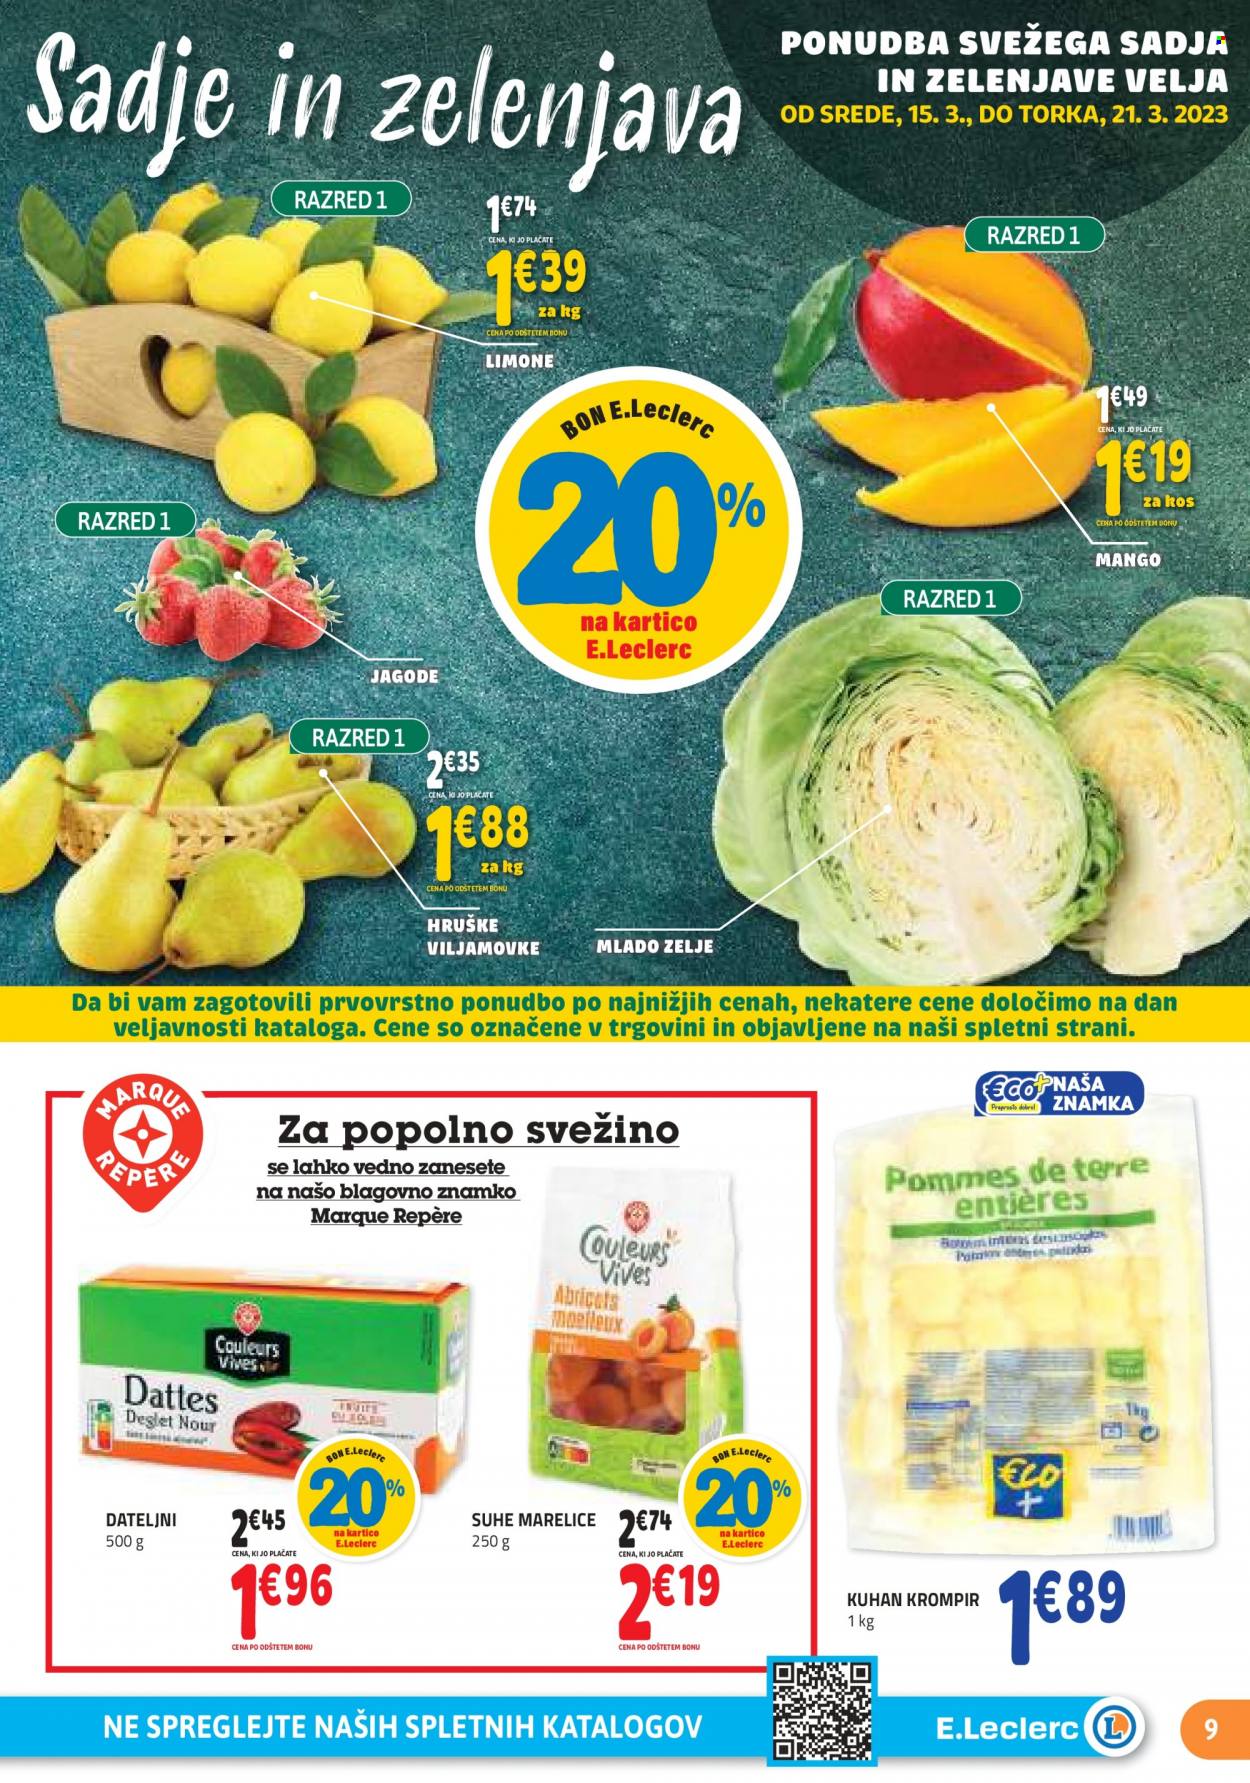 thumbnail - E.Leclerc katalog - 15.3.2023 - 25.3.2023 - Ponudba izdelkov - hruške, jagode, limona, marelice, krompir, dateljni. Stran 9.